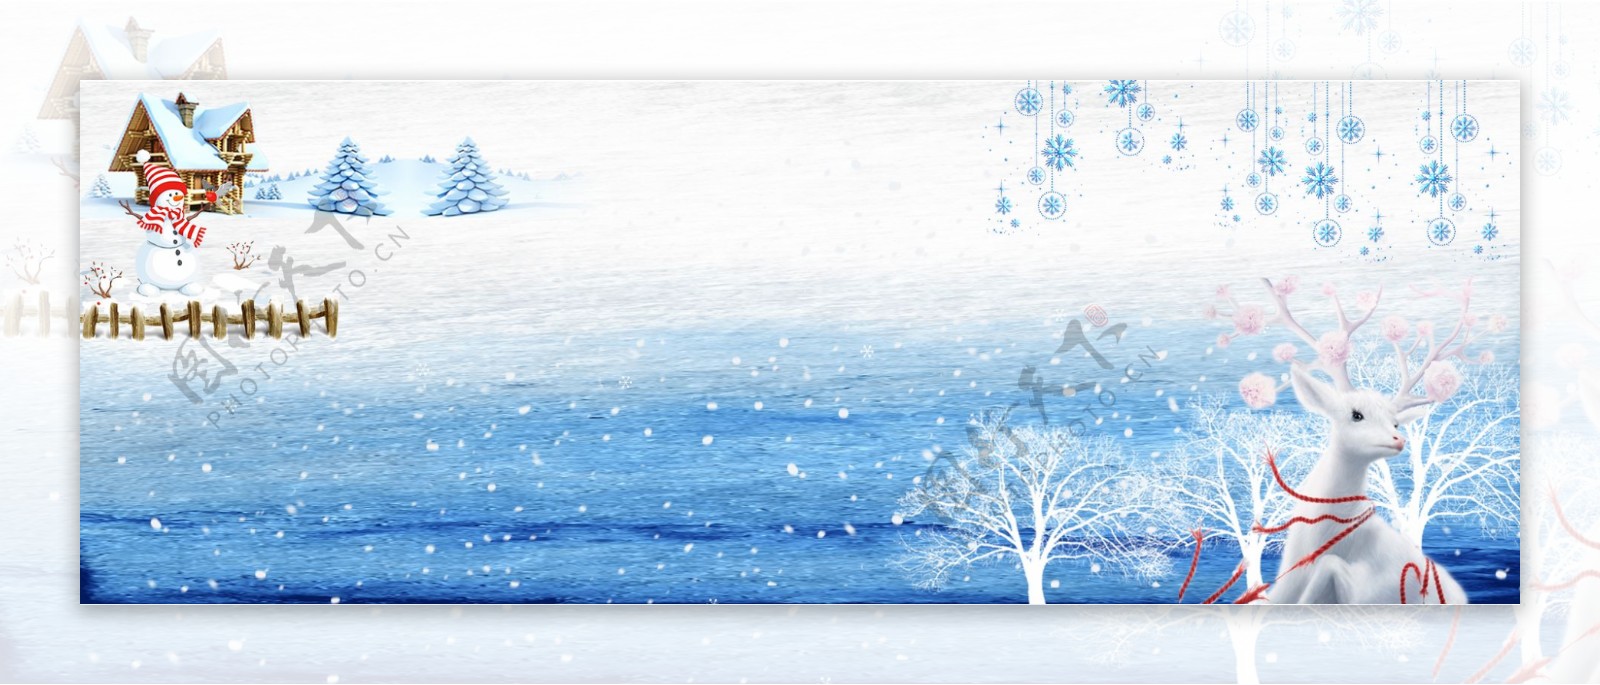 12月你好冬天雪天雪人鹿银树